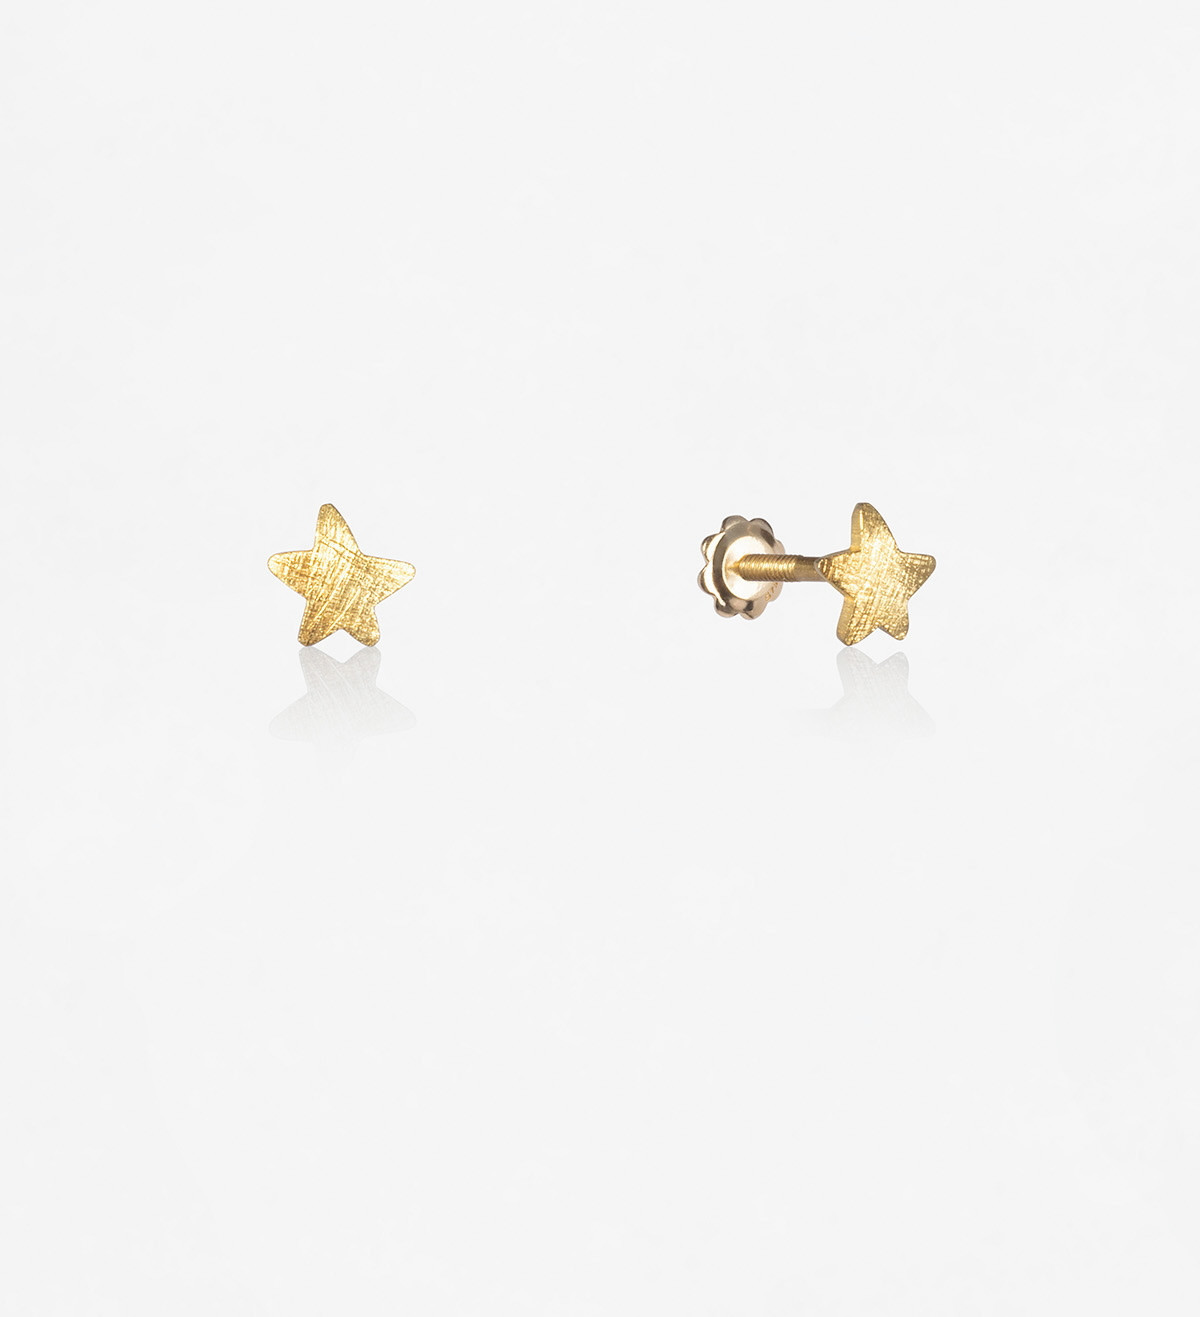 18k gold earrings Símbol star 5mm